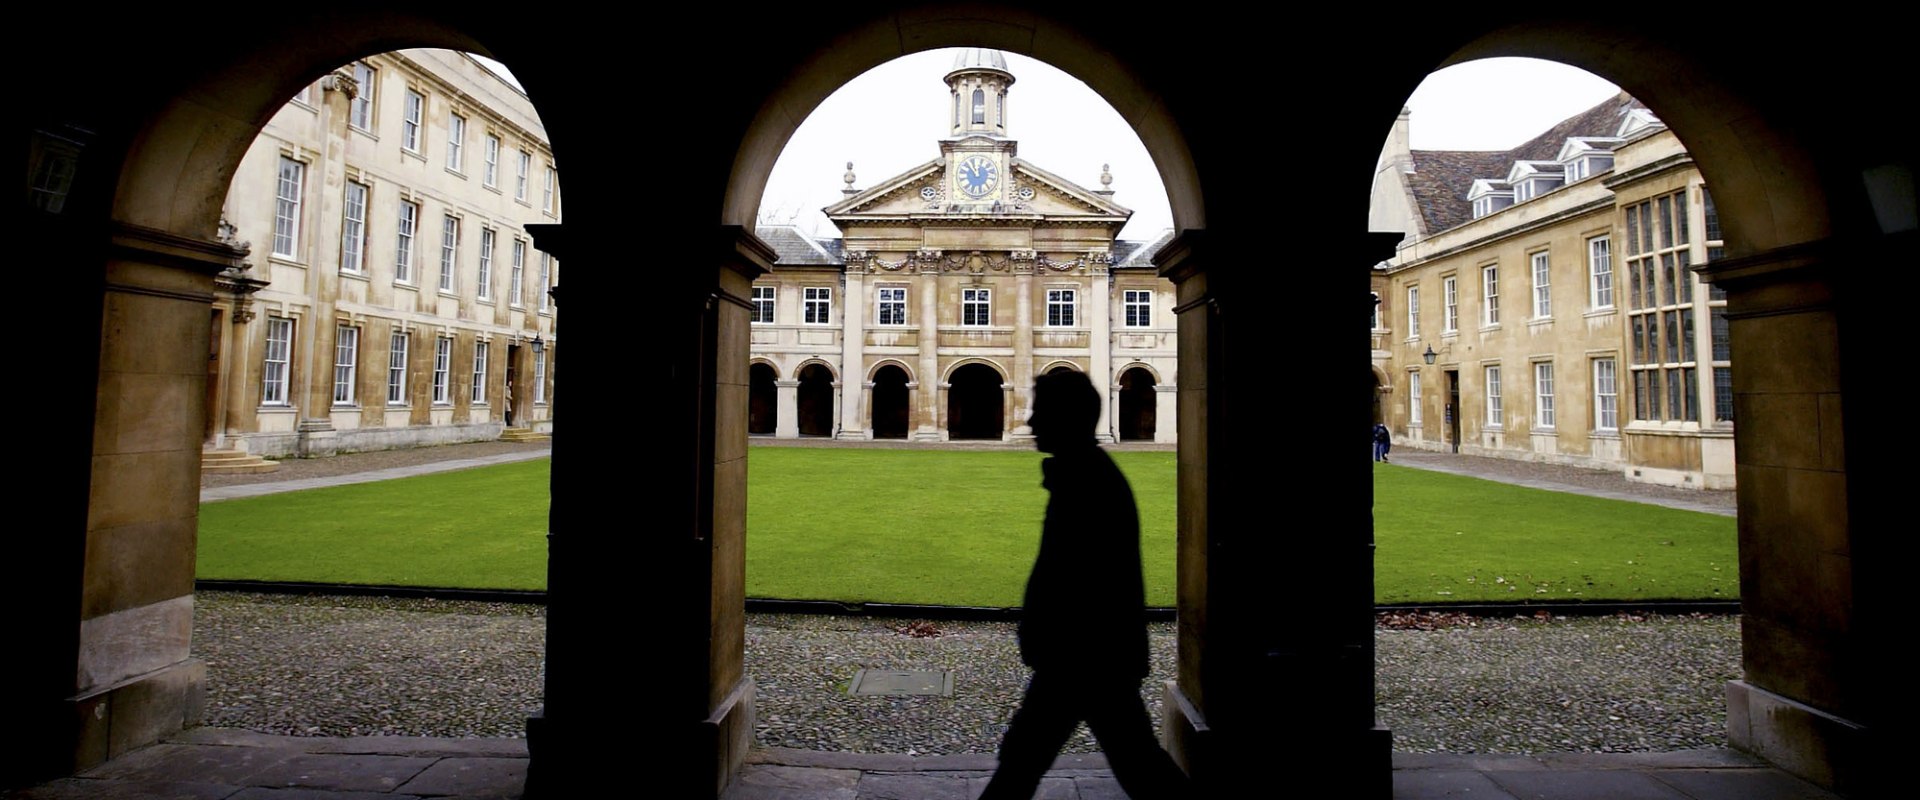 Explore Christ's College: Cambridge's Premier Academic Institution